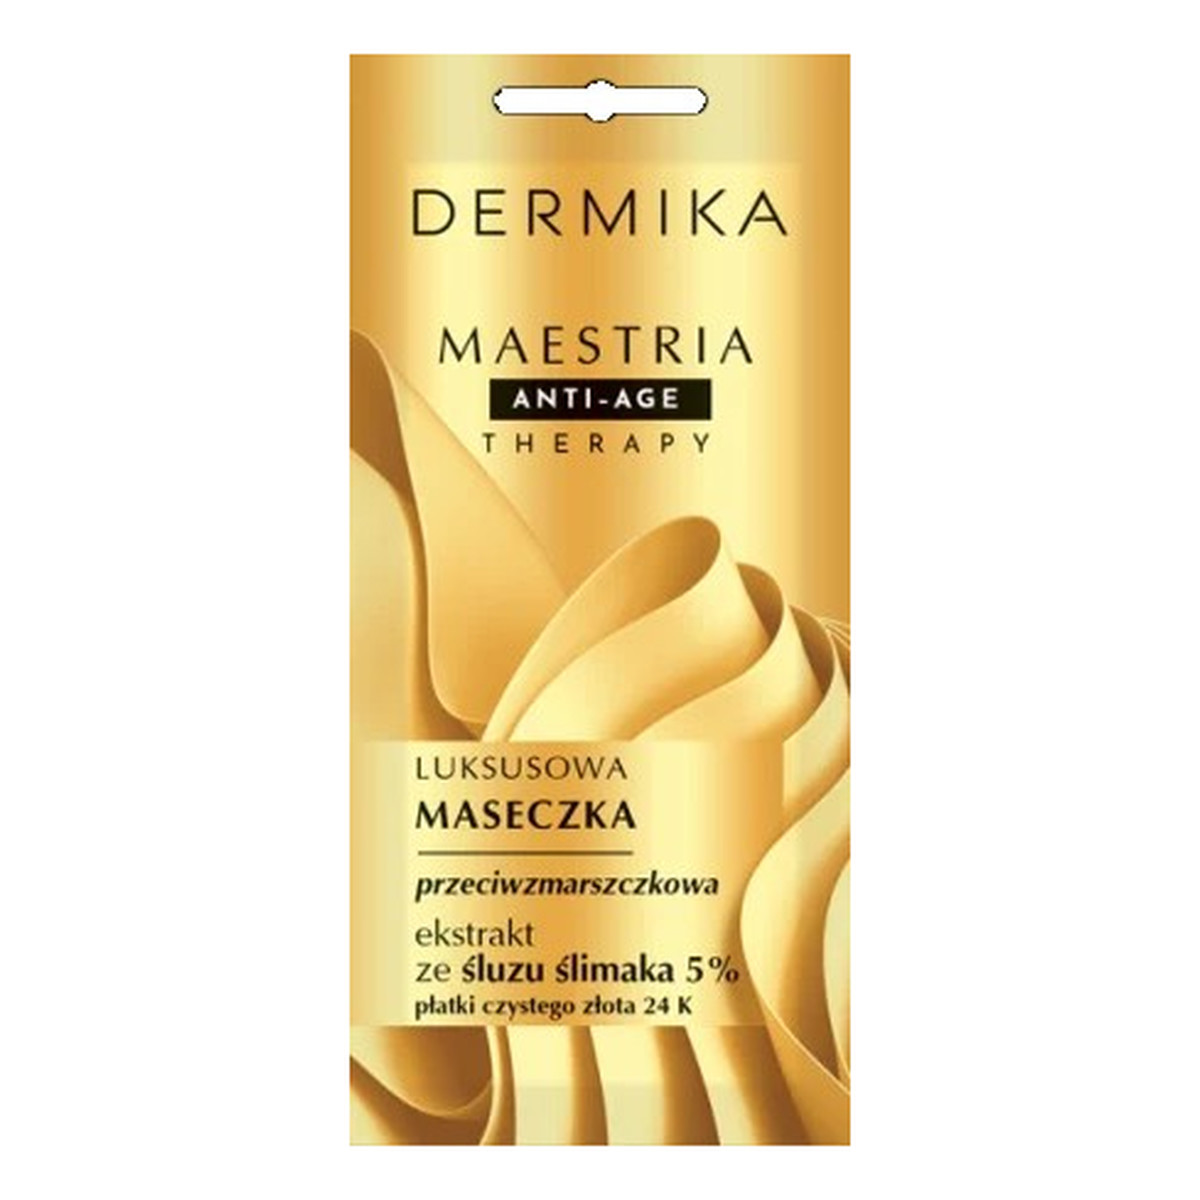 Dermika Maestria Anti-Age Therapy luksusowa maseczka przeciwzmarszczkowa-ekstrakt ze śluzu ślimaka 5% 7g